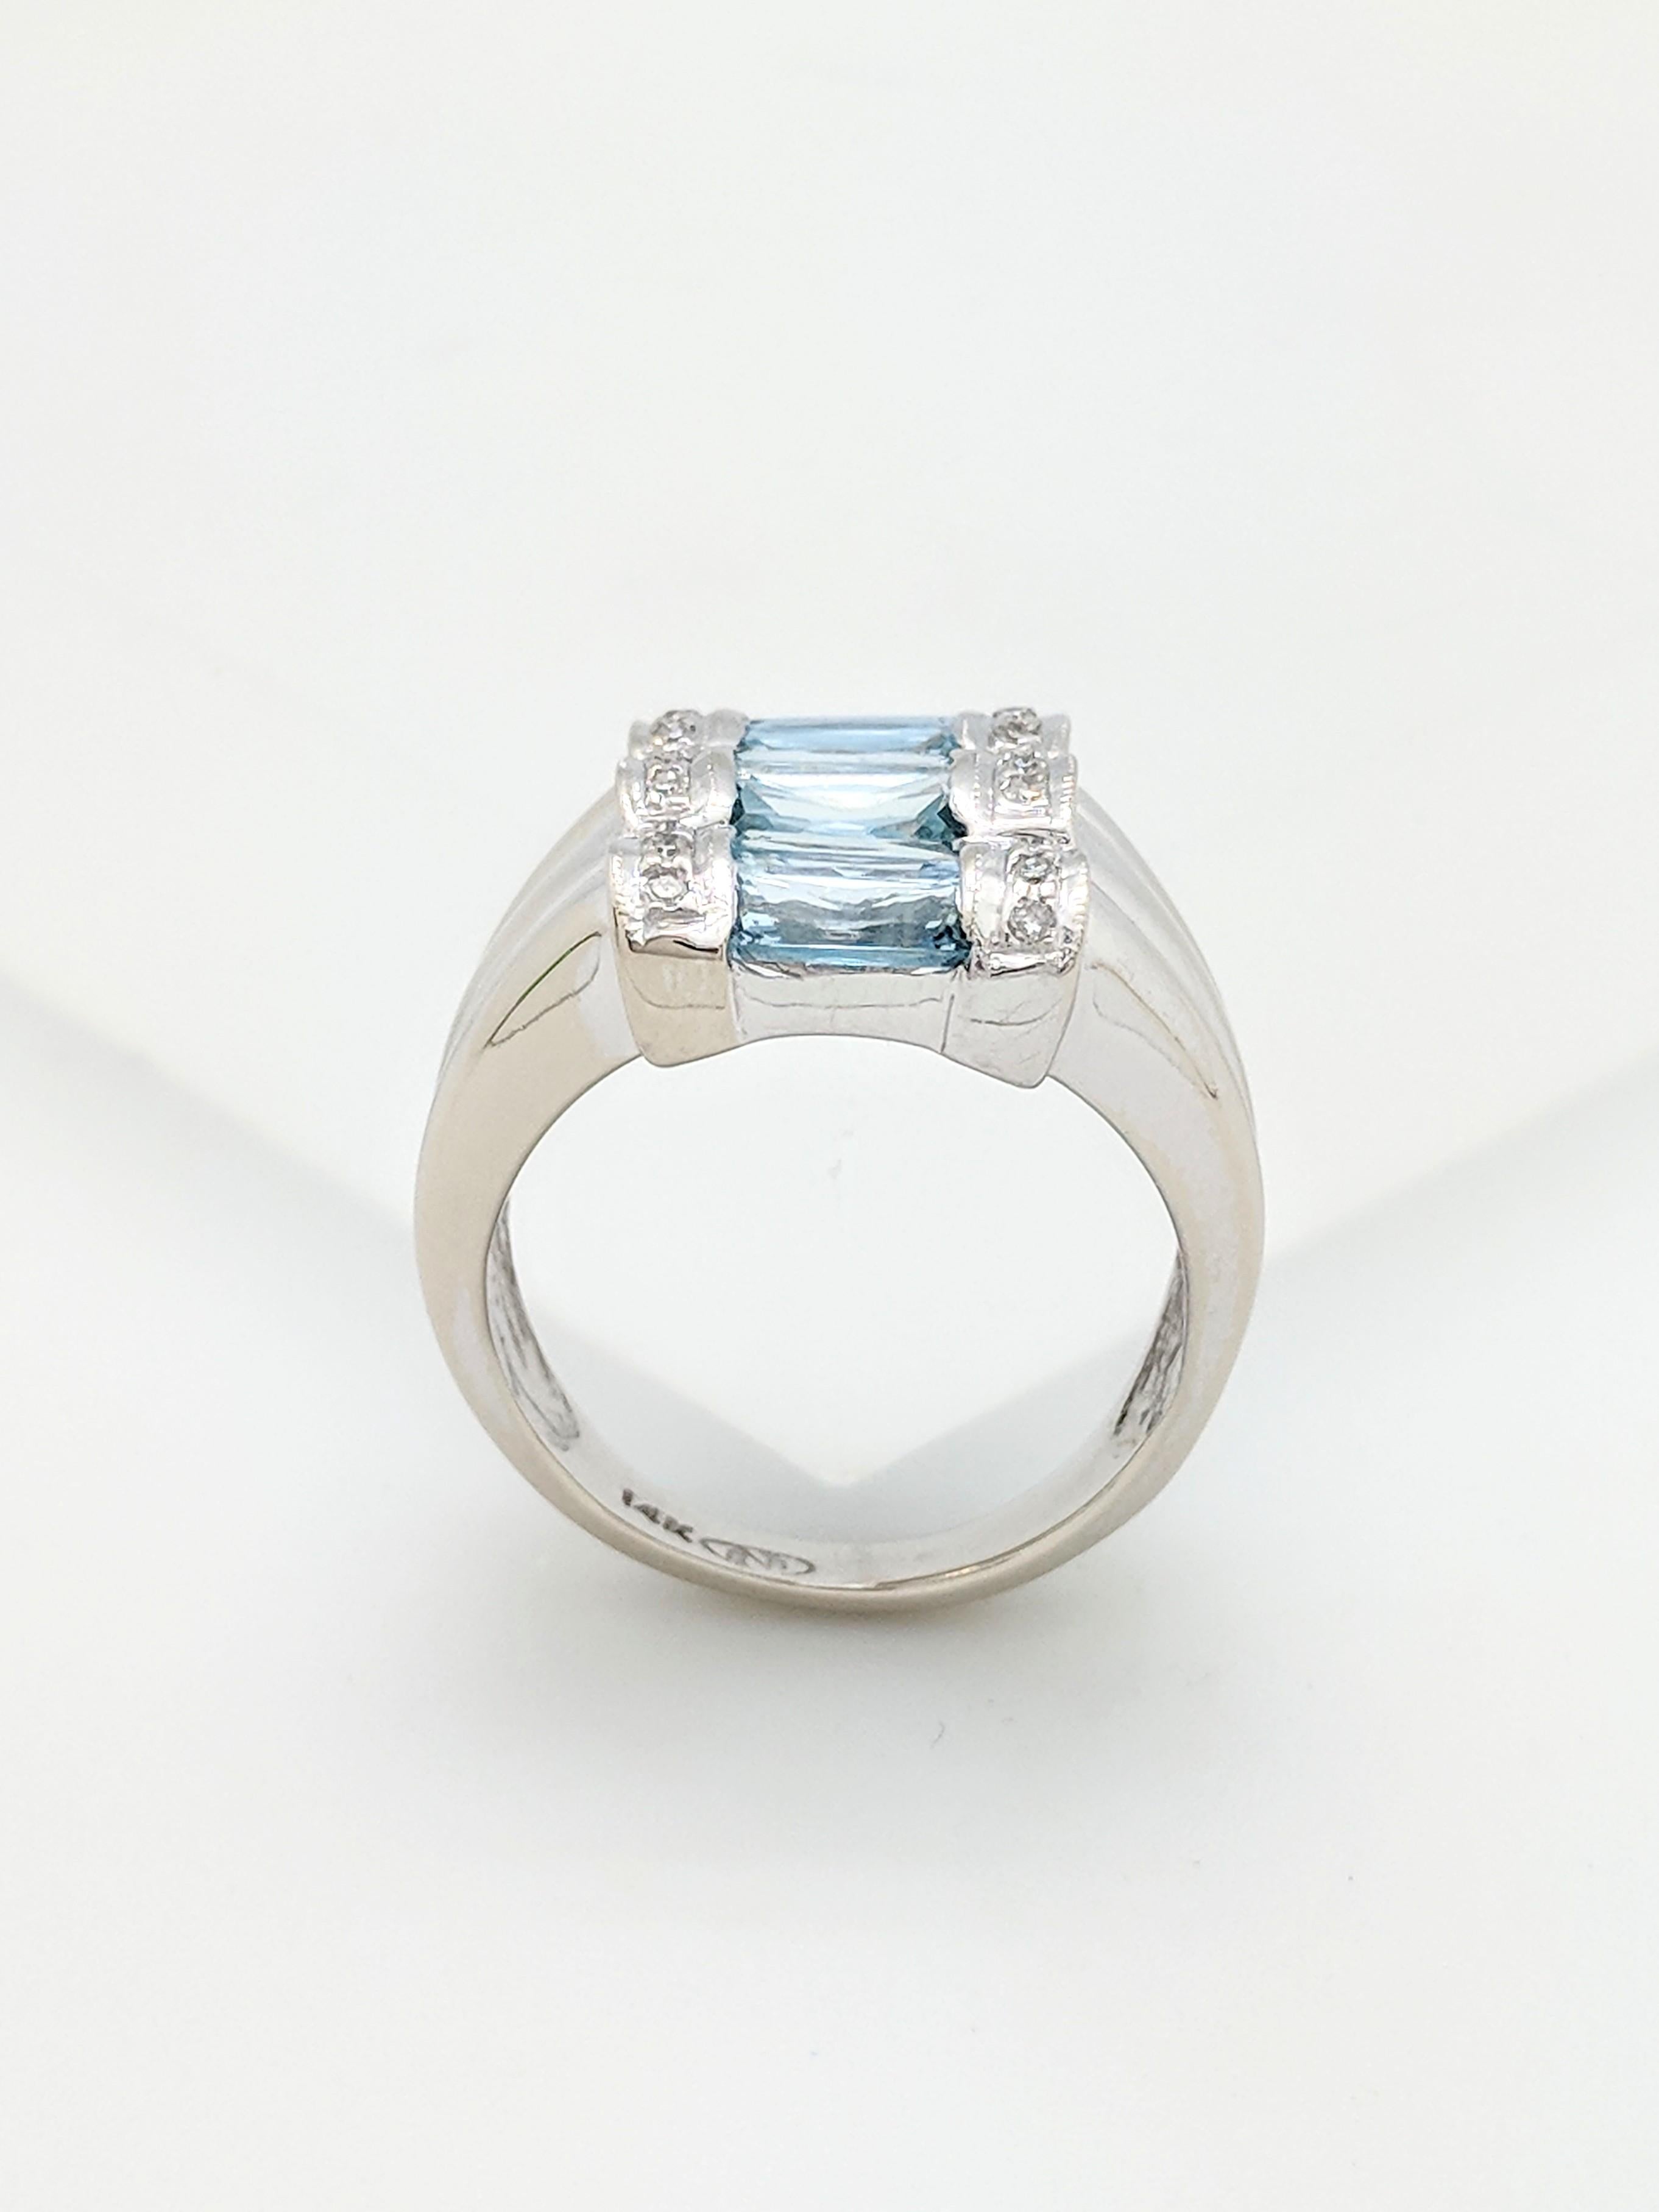 14 Karat White Gold Aquamarine and Diamond Ring 2